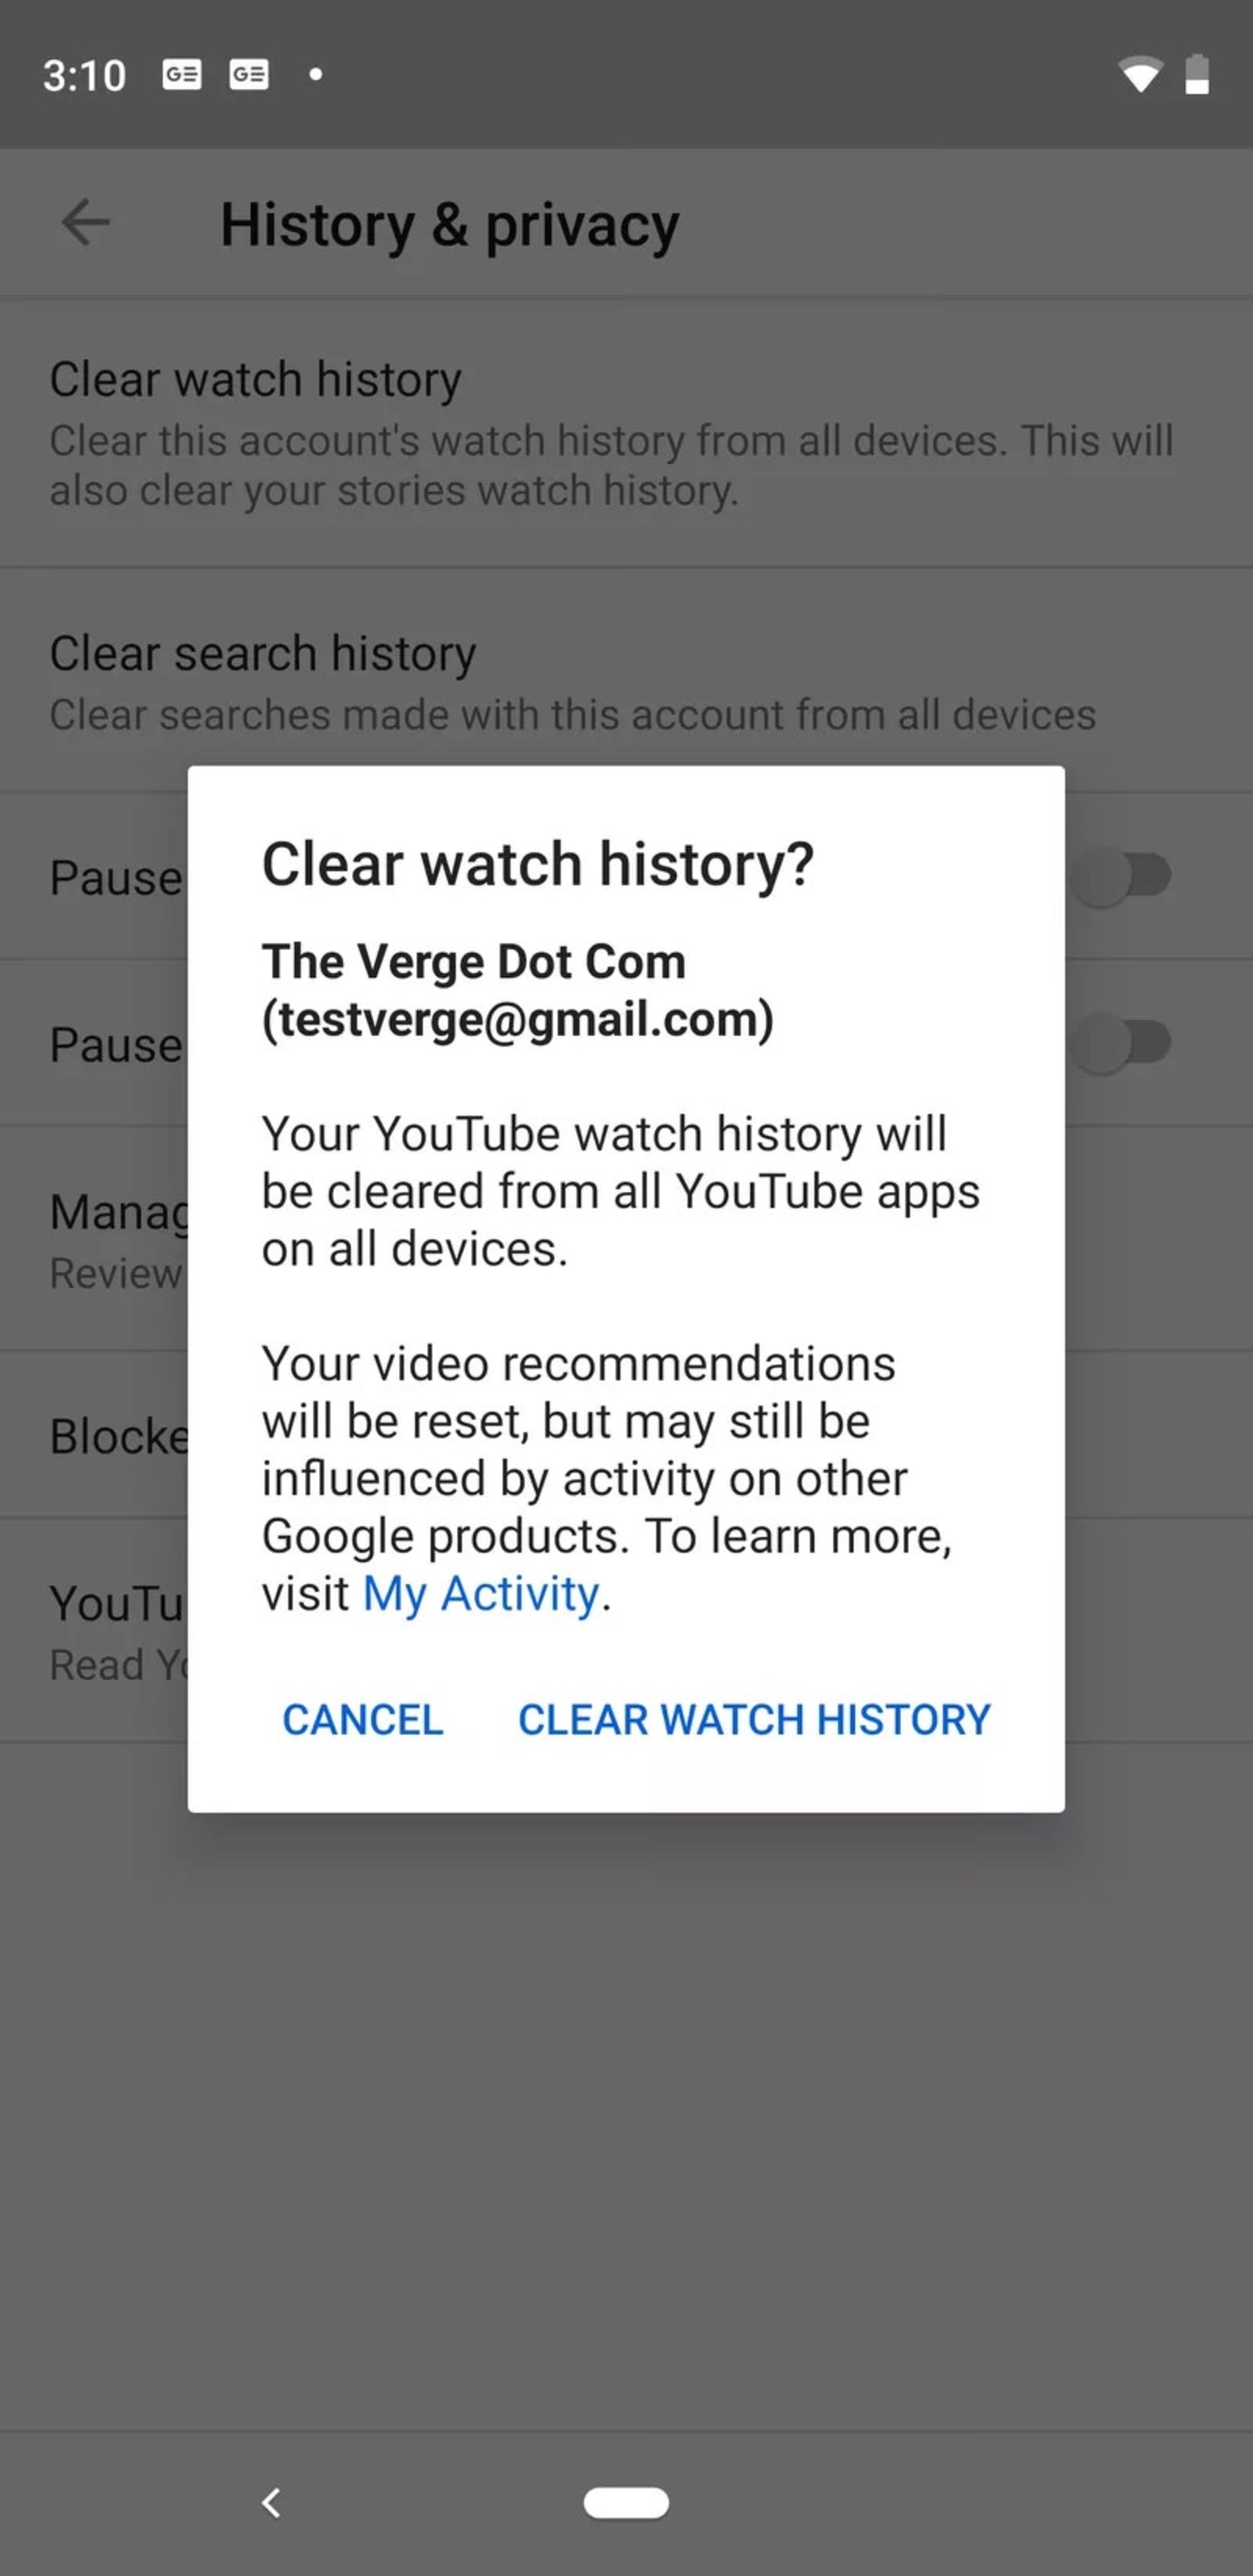 حفظ حریم خصوصی در یوتیوب